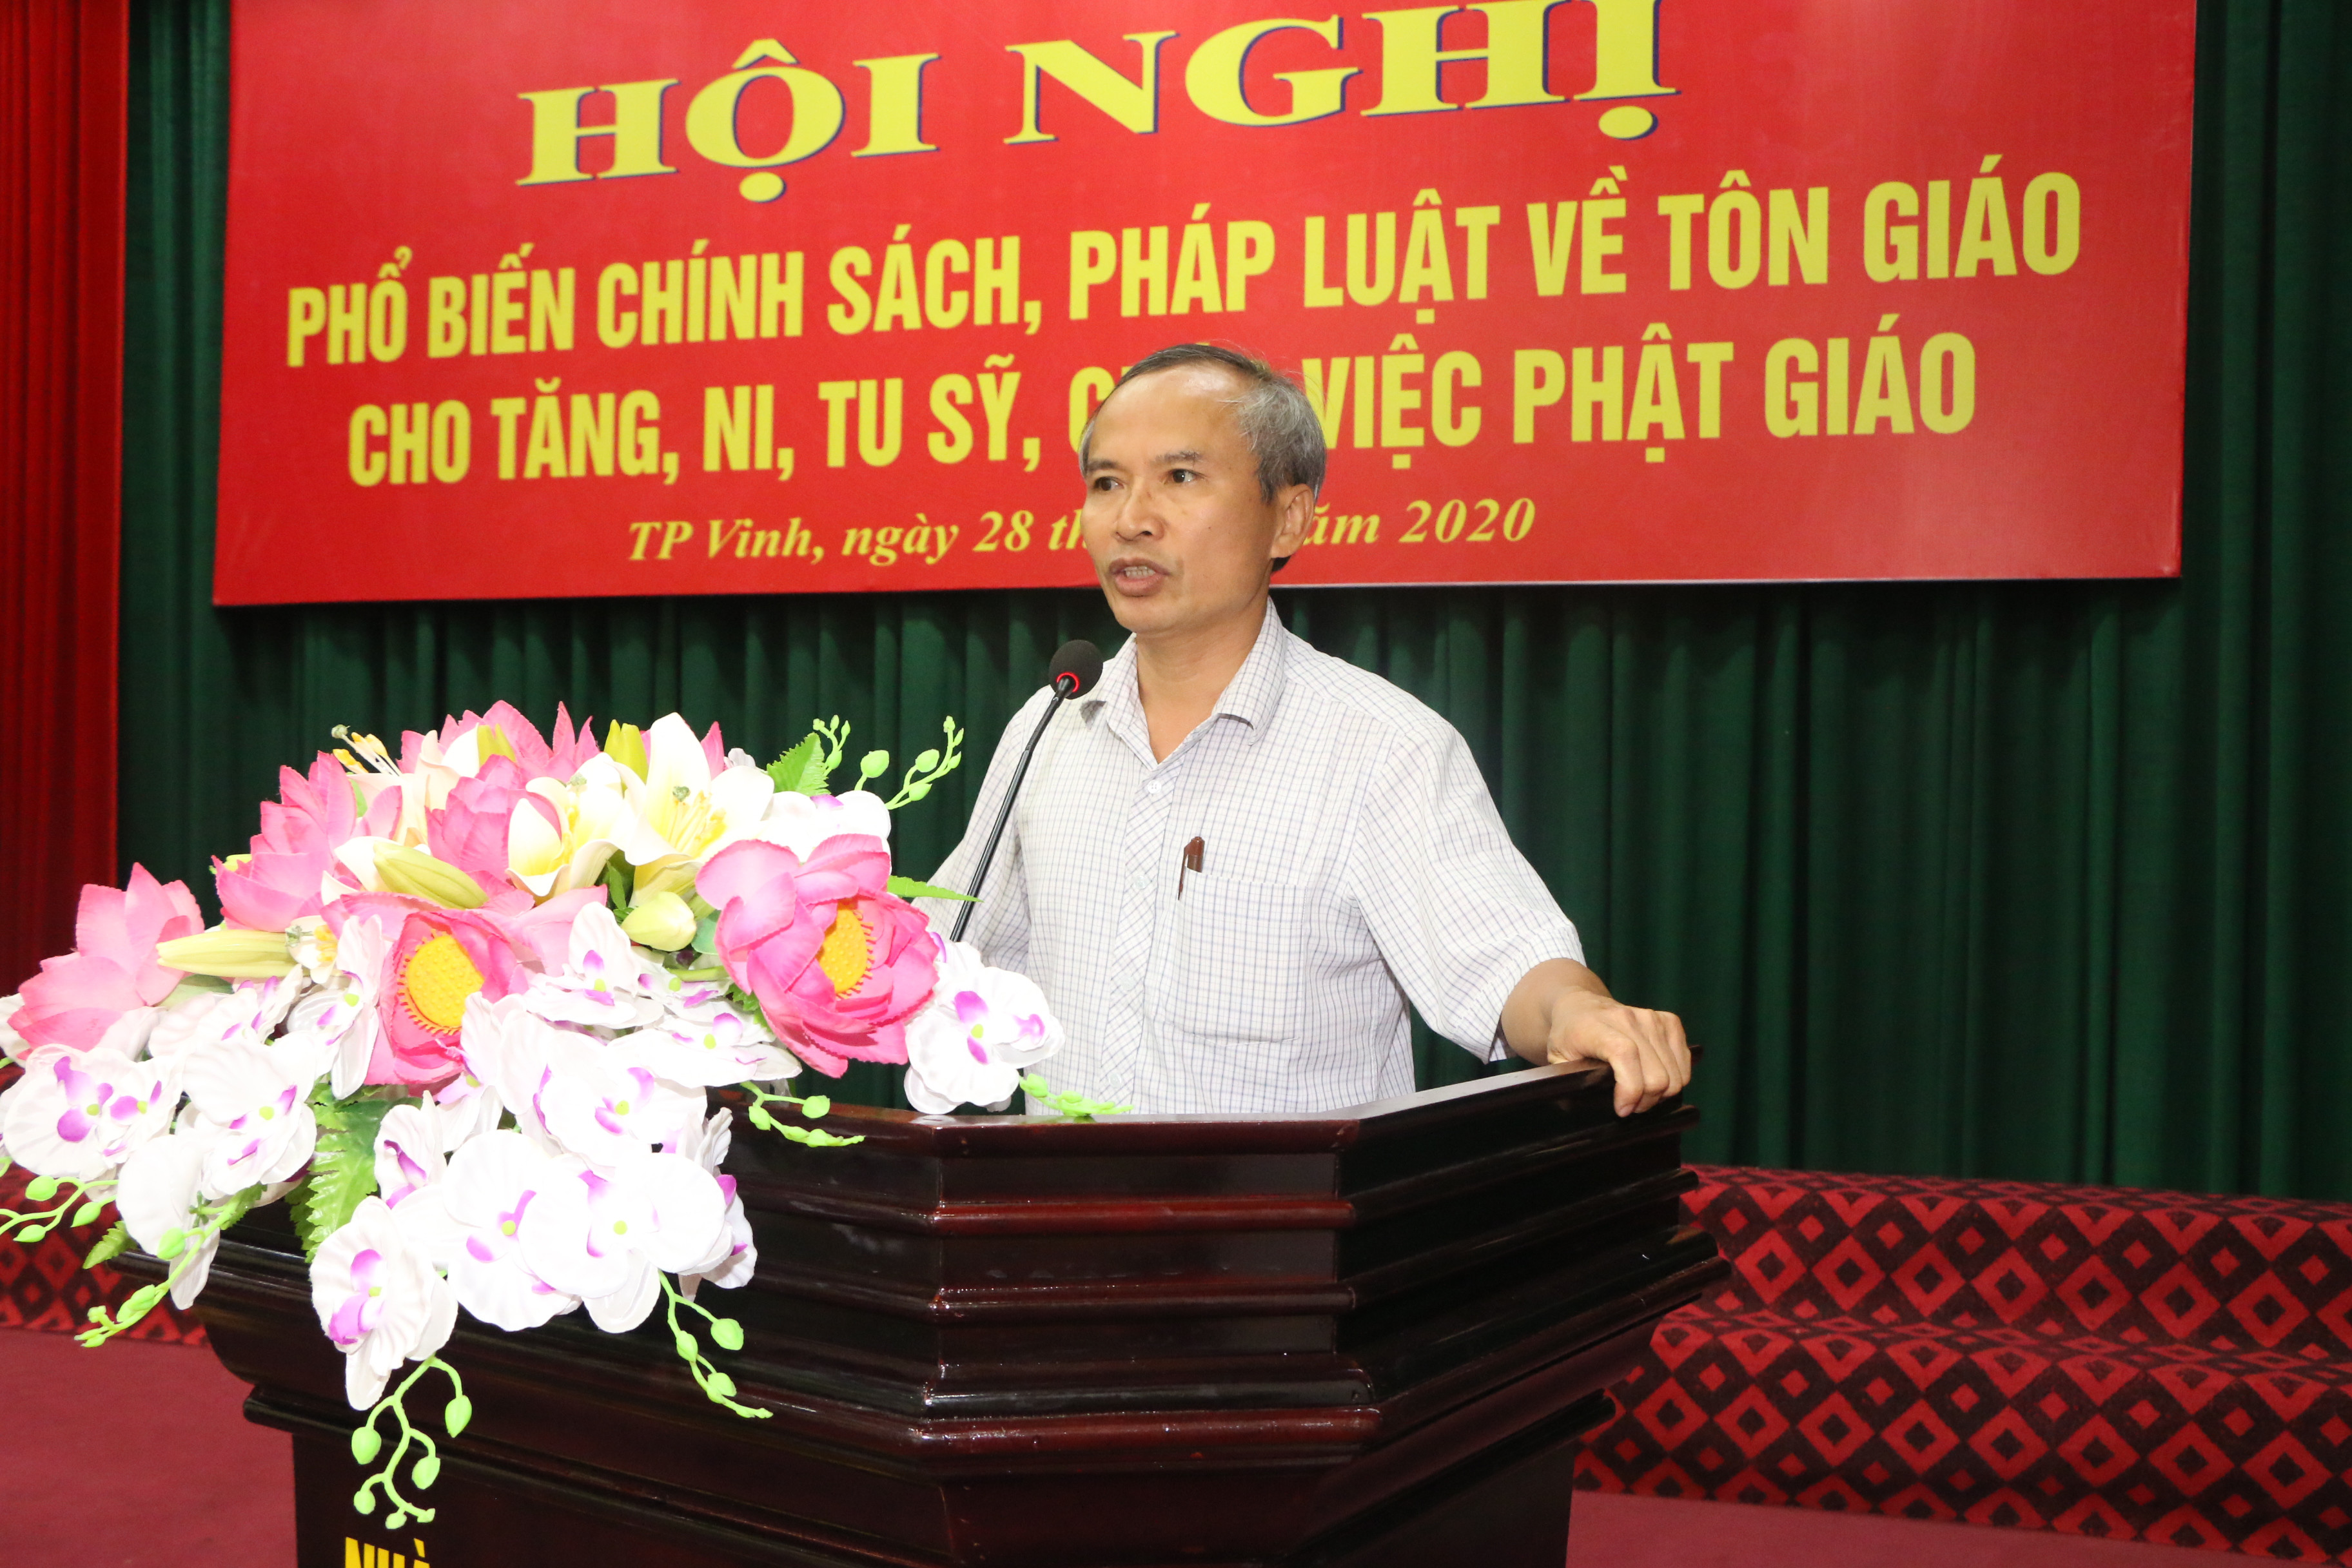 Ông Lưu Công Vinh- Phó giám đốc Sở Nội vụ, Trưởng ban Tôn giáo tỉnh phát biểu tại hội nghị. Ảnh: K.L